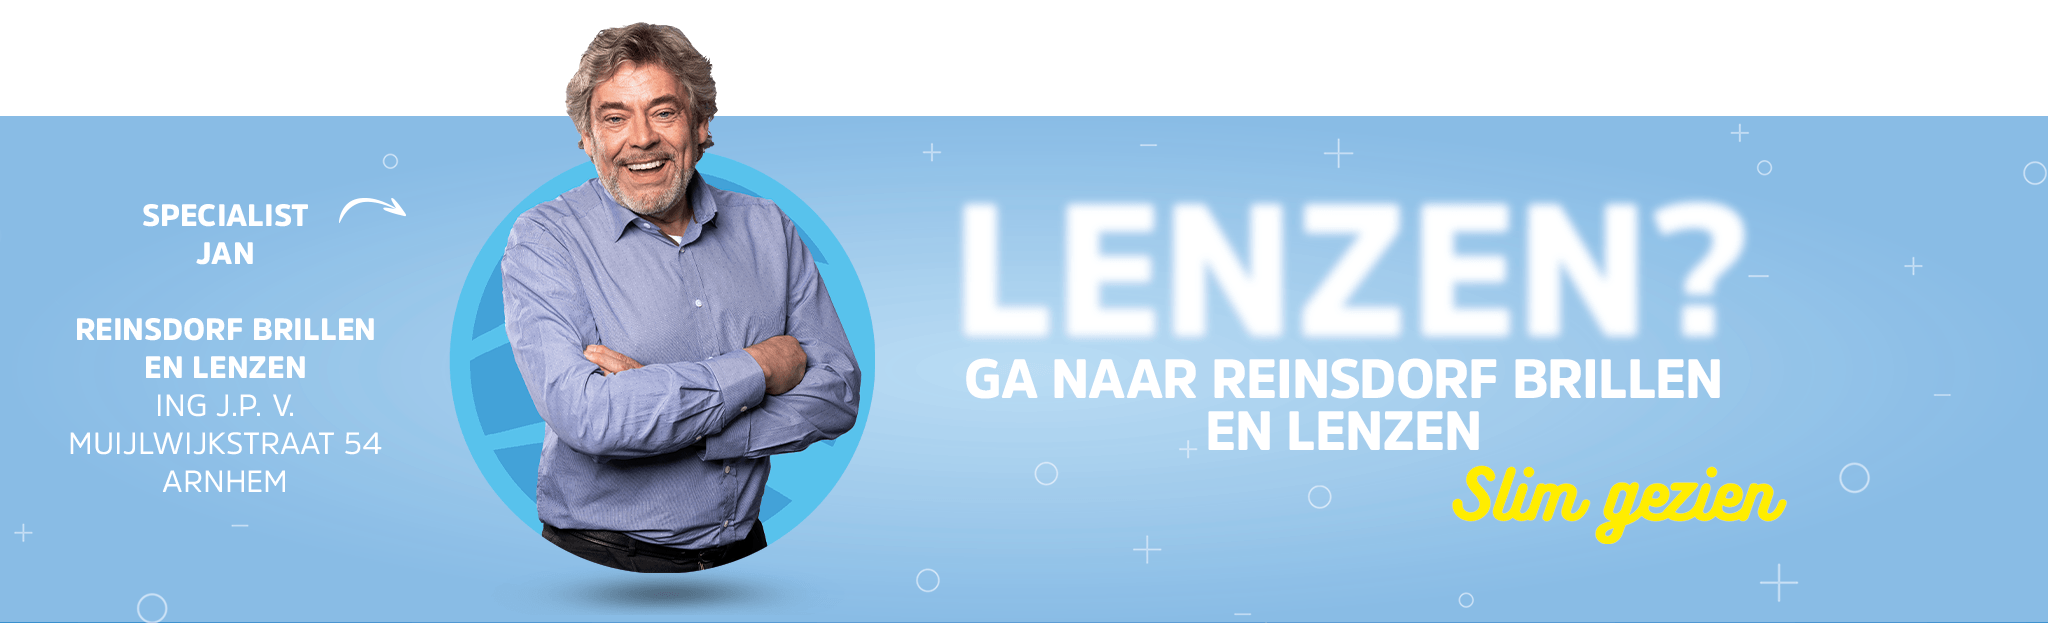 Reinsdorf Brillen Lenzen LensOnline.nl